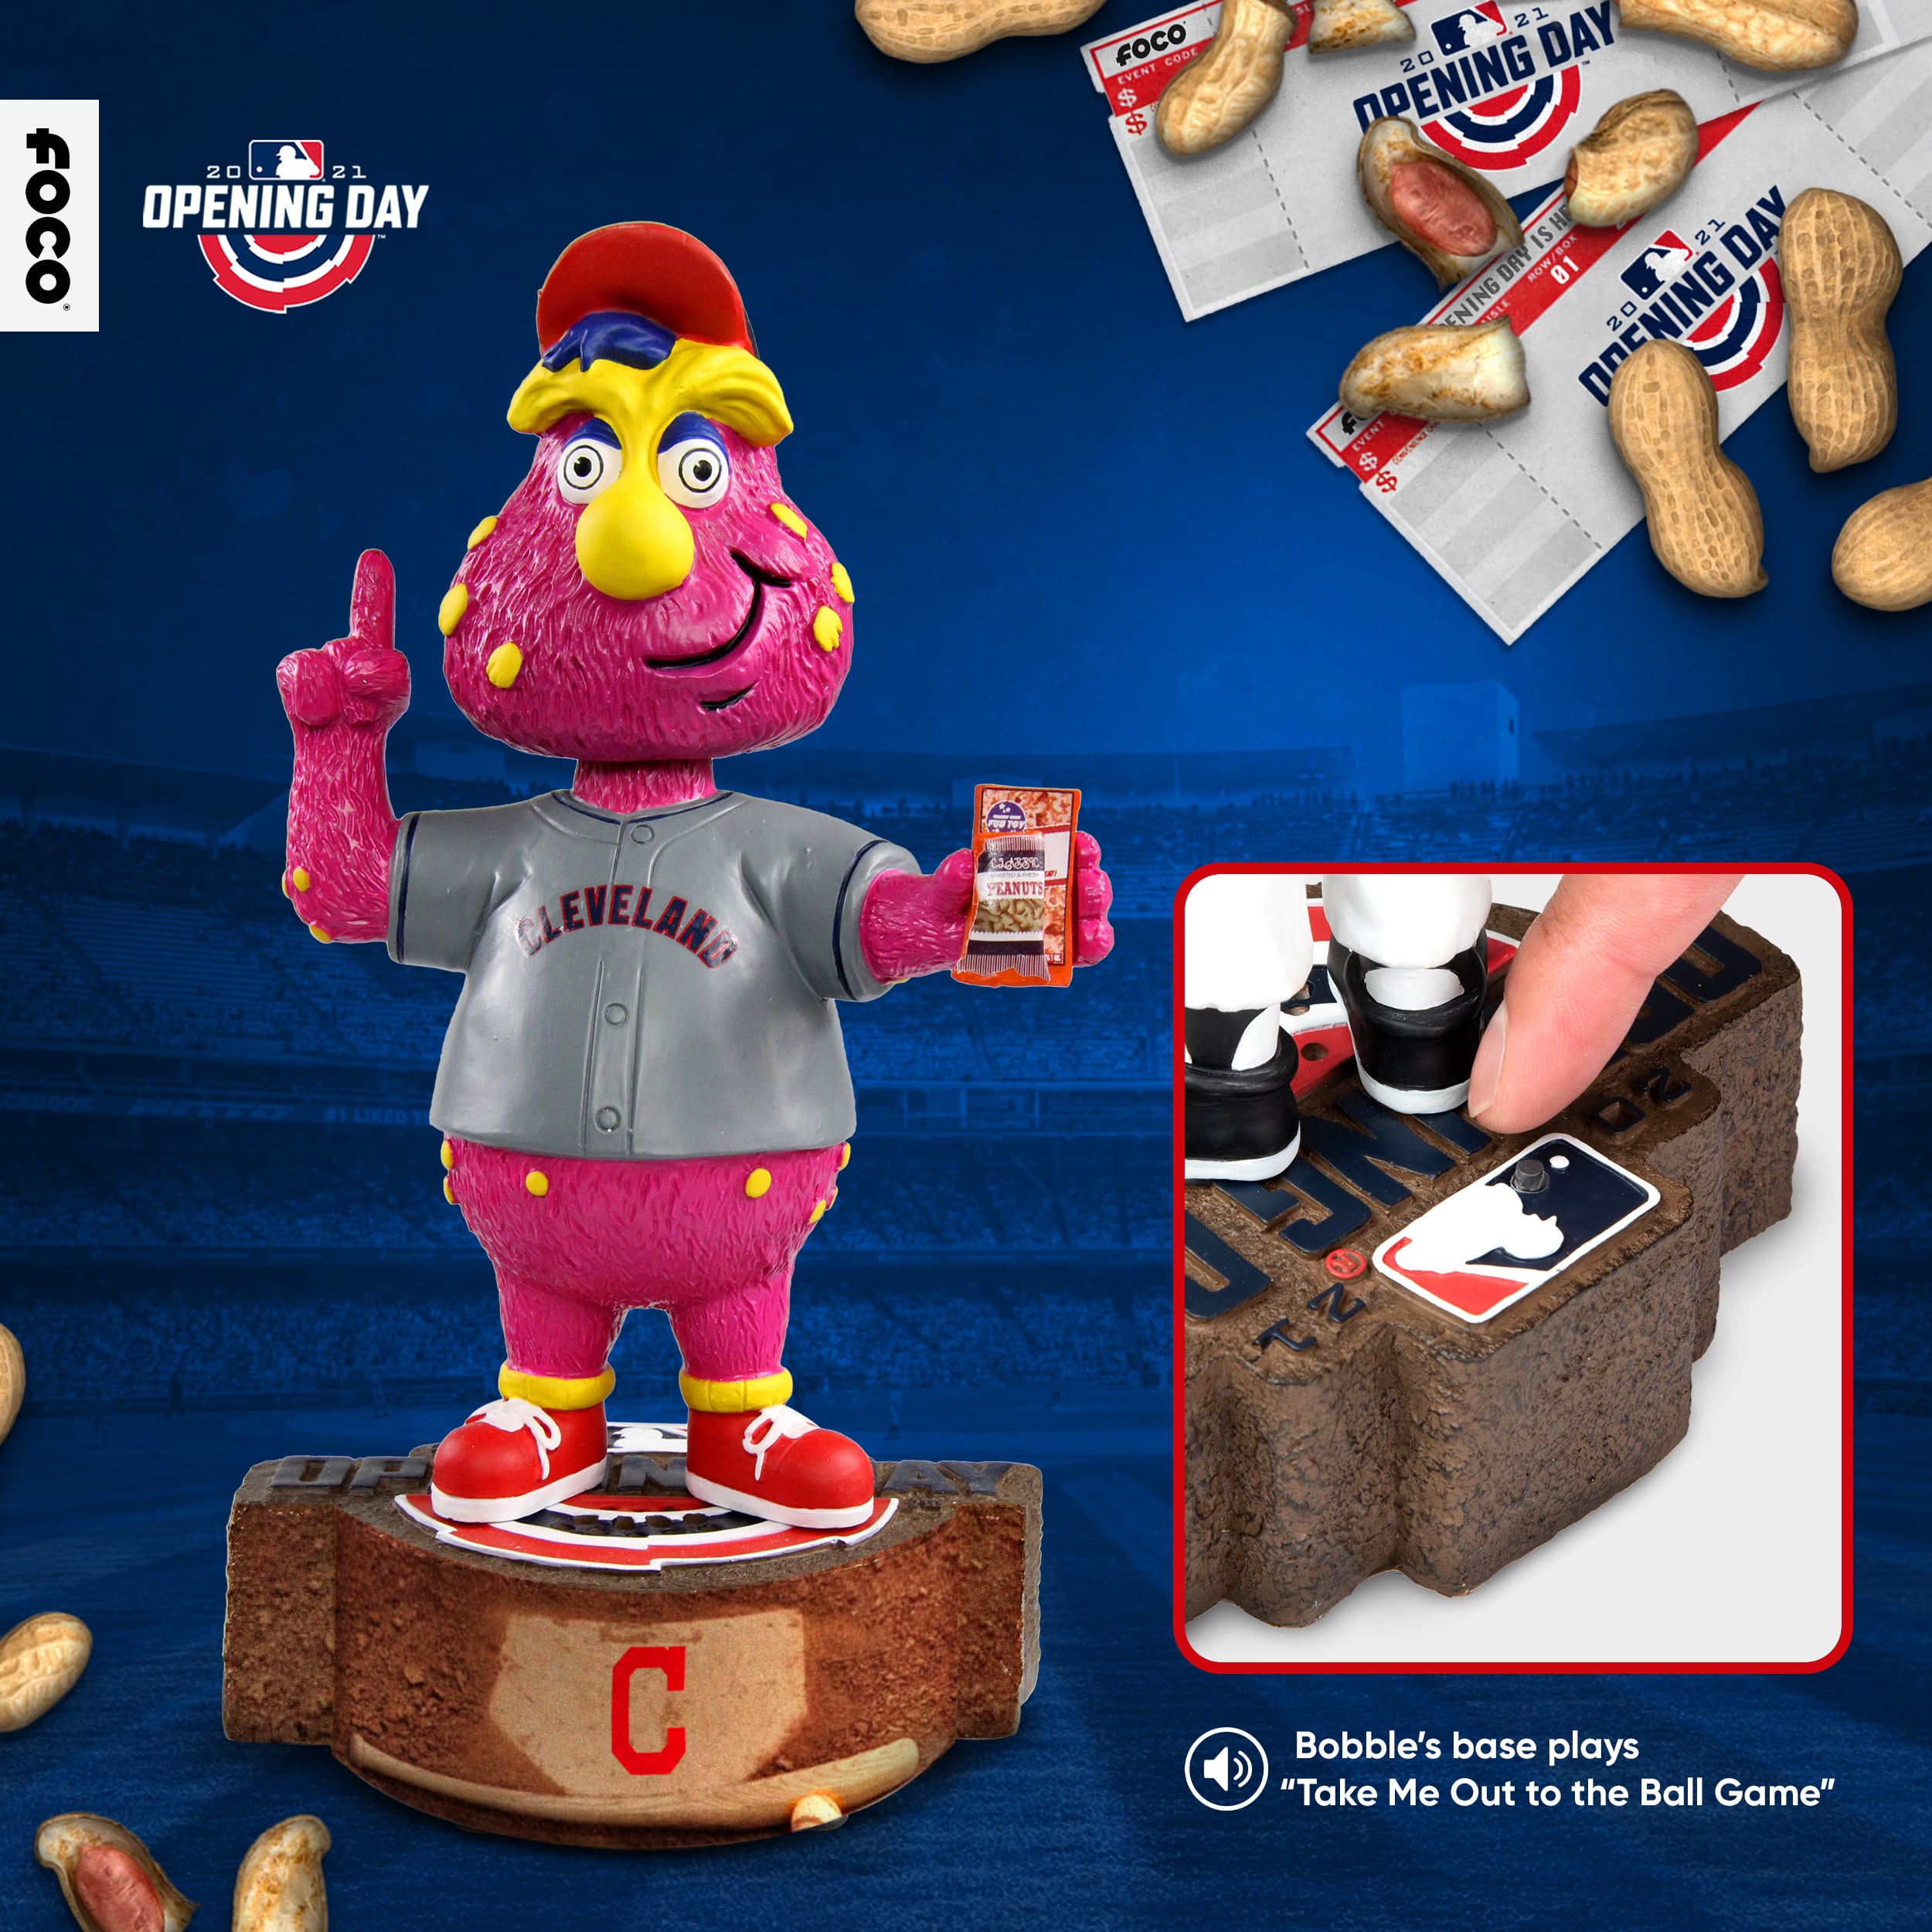 Lot - Cleveland Indians mascot bobble head w/ original box. 7”